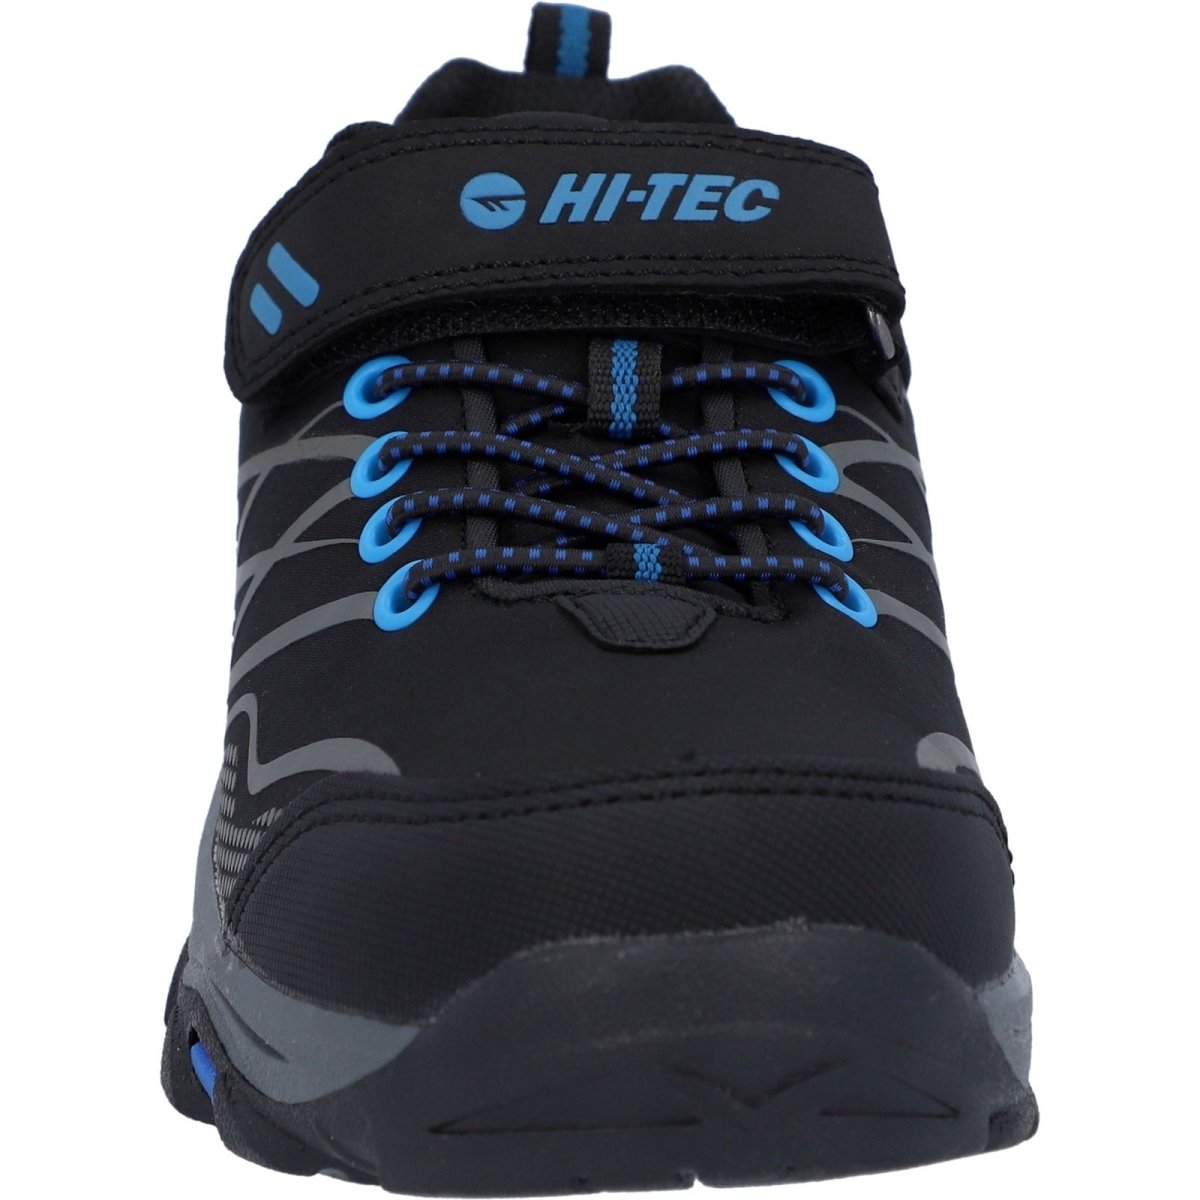 Hi-Tec Blackout Low Boots - Shoe Store Direct